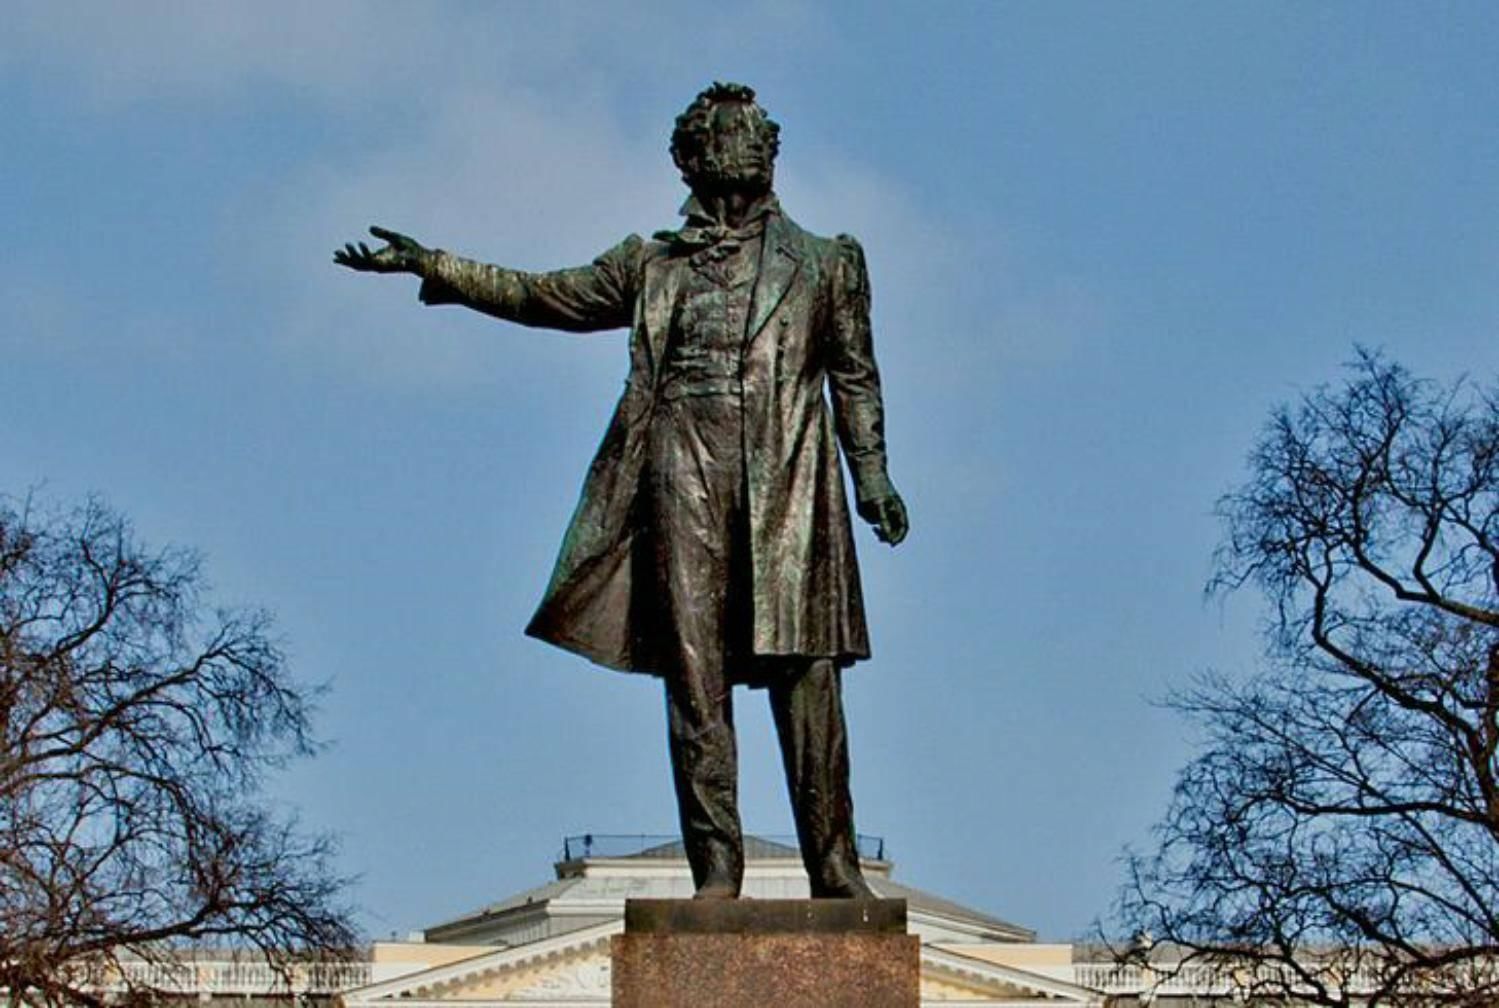 Первый памятник пушкину в россии